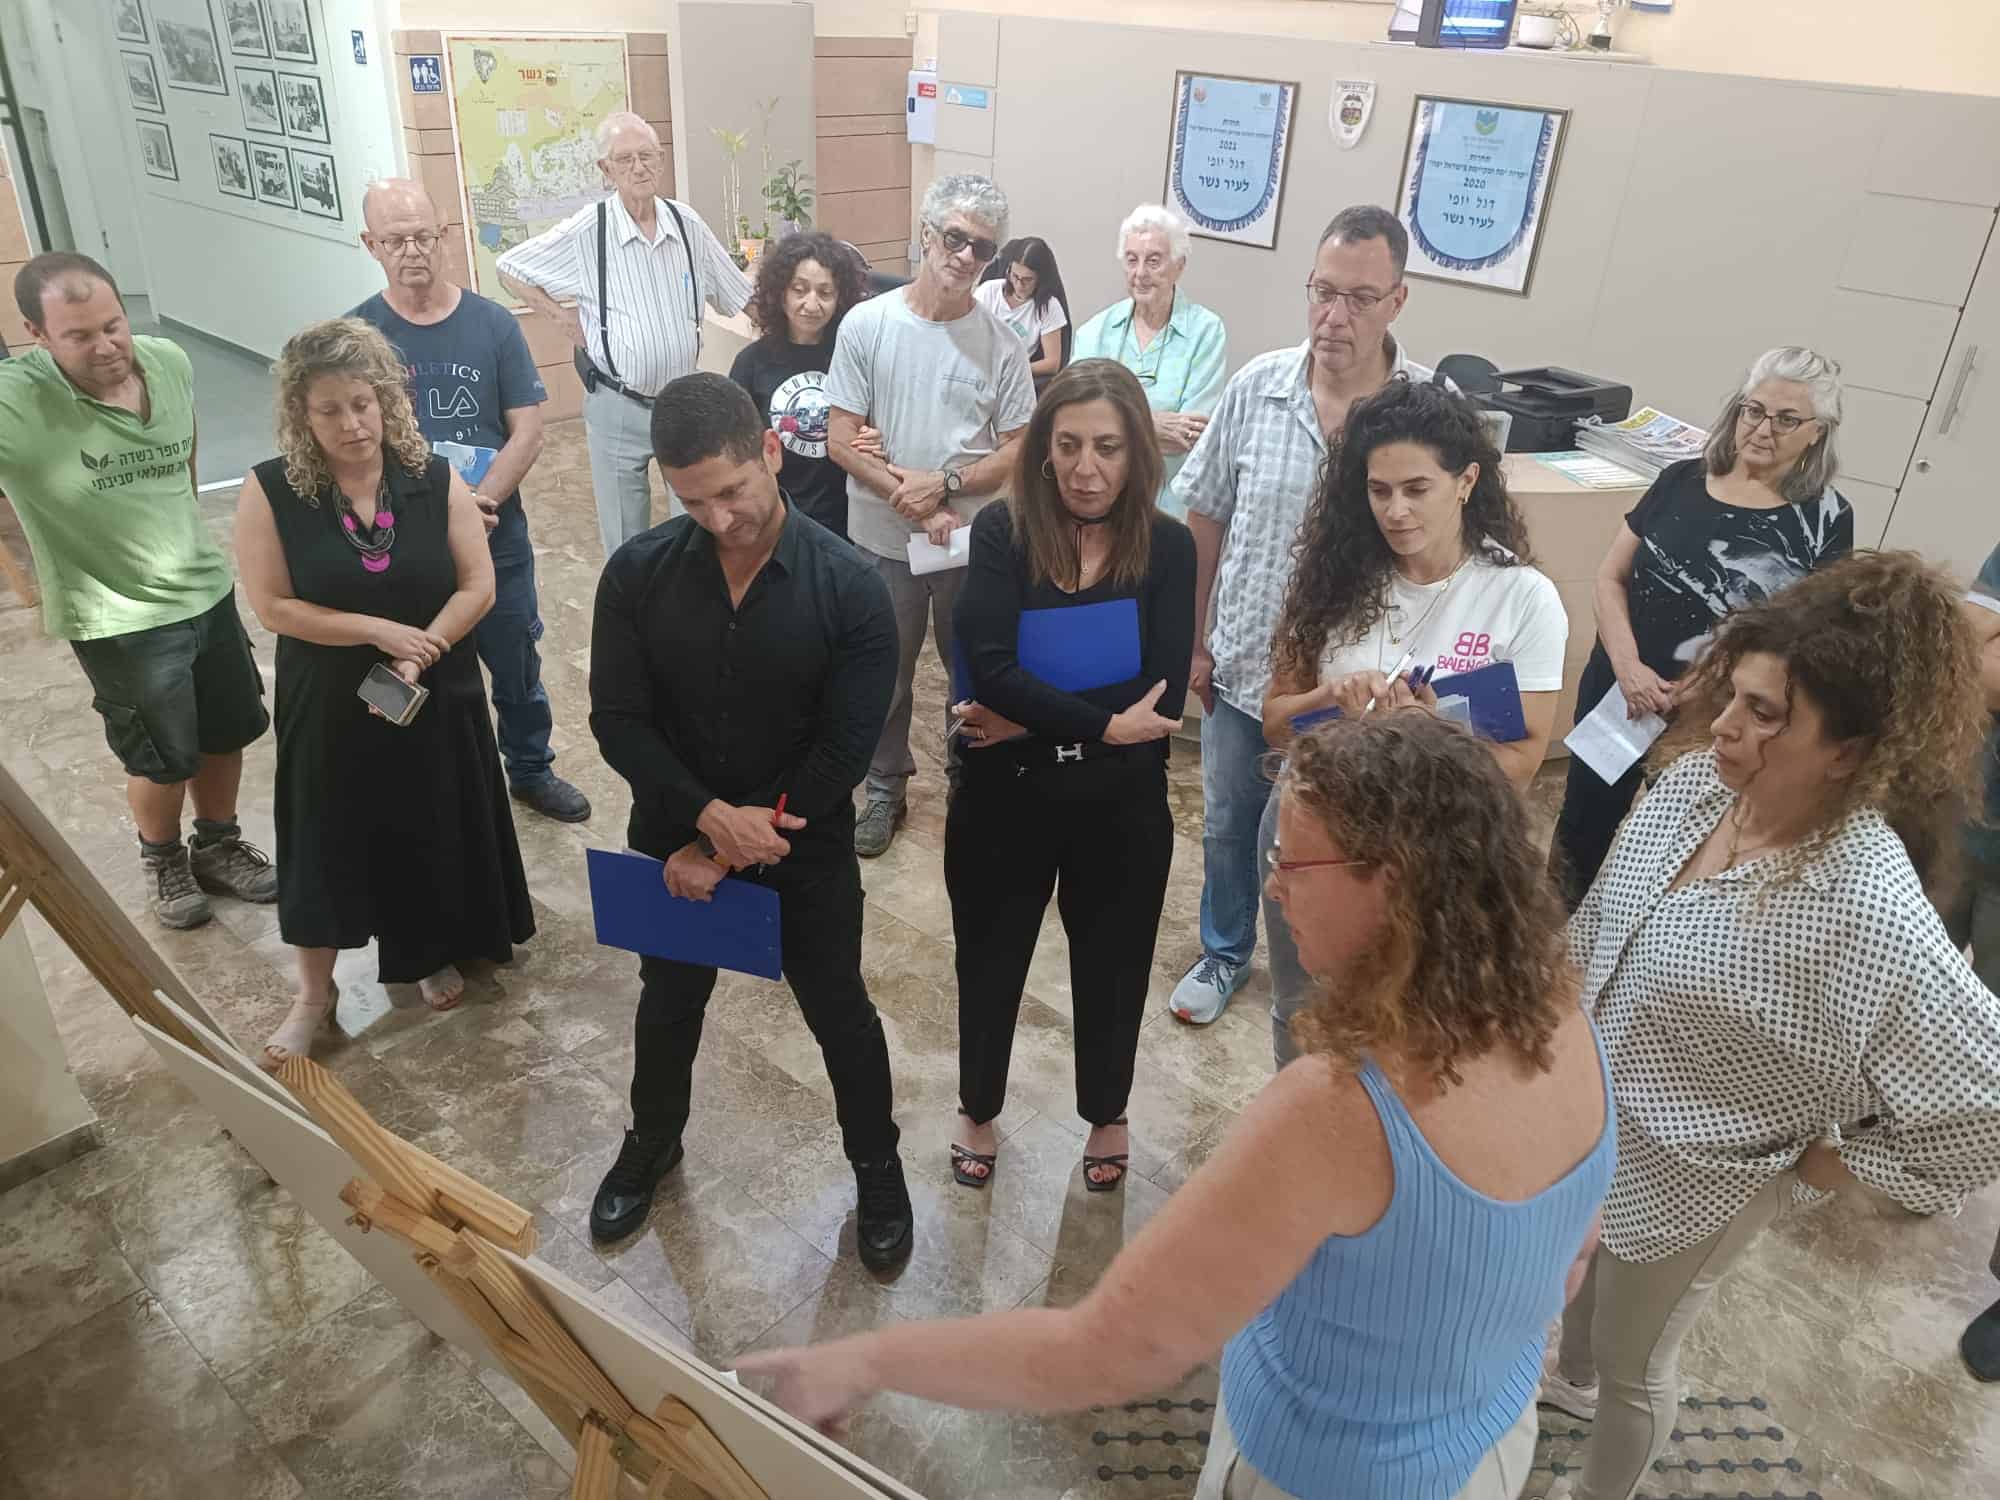 מיזמים סביבתיים של נשר זכו בתחרות אזורית במפרץ חיפה